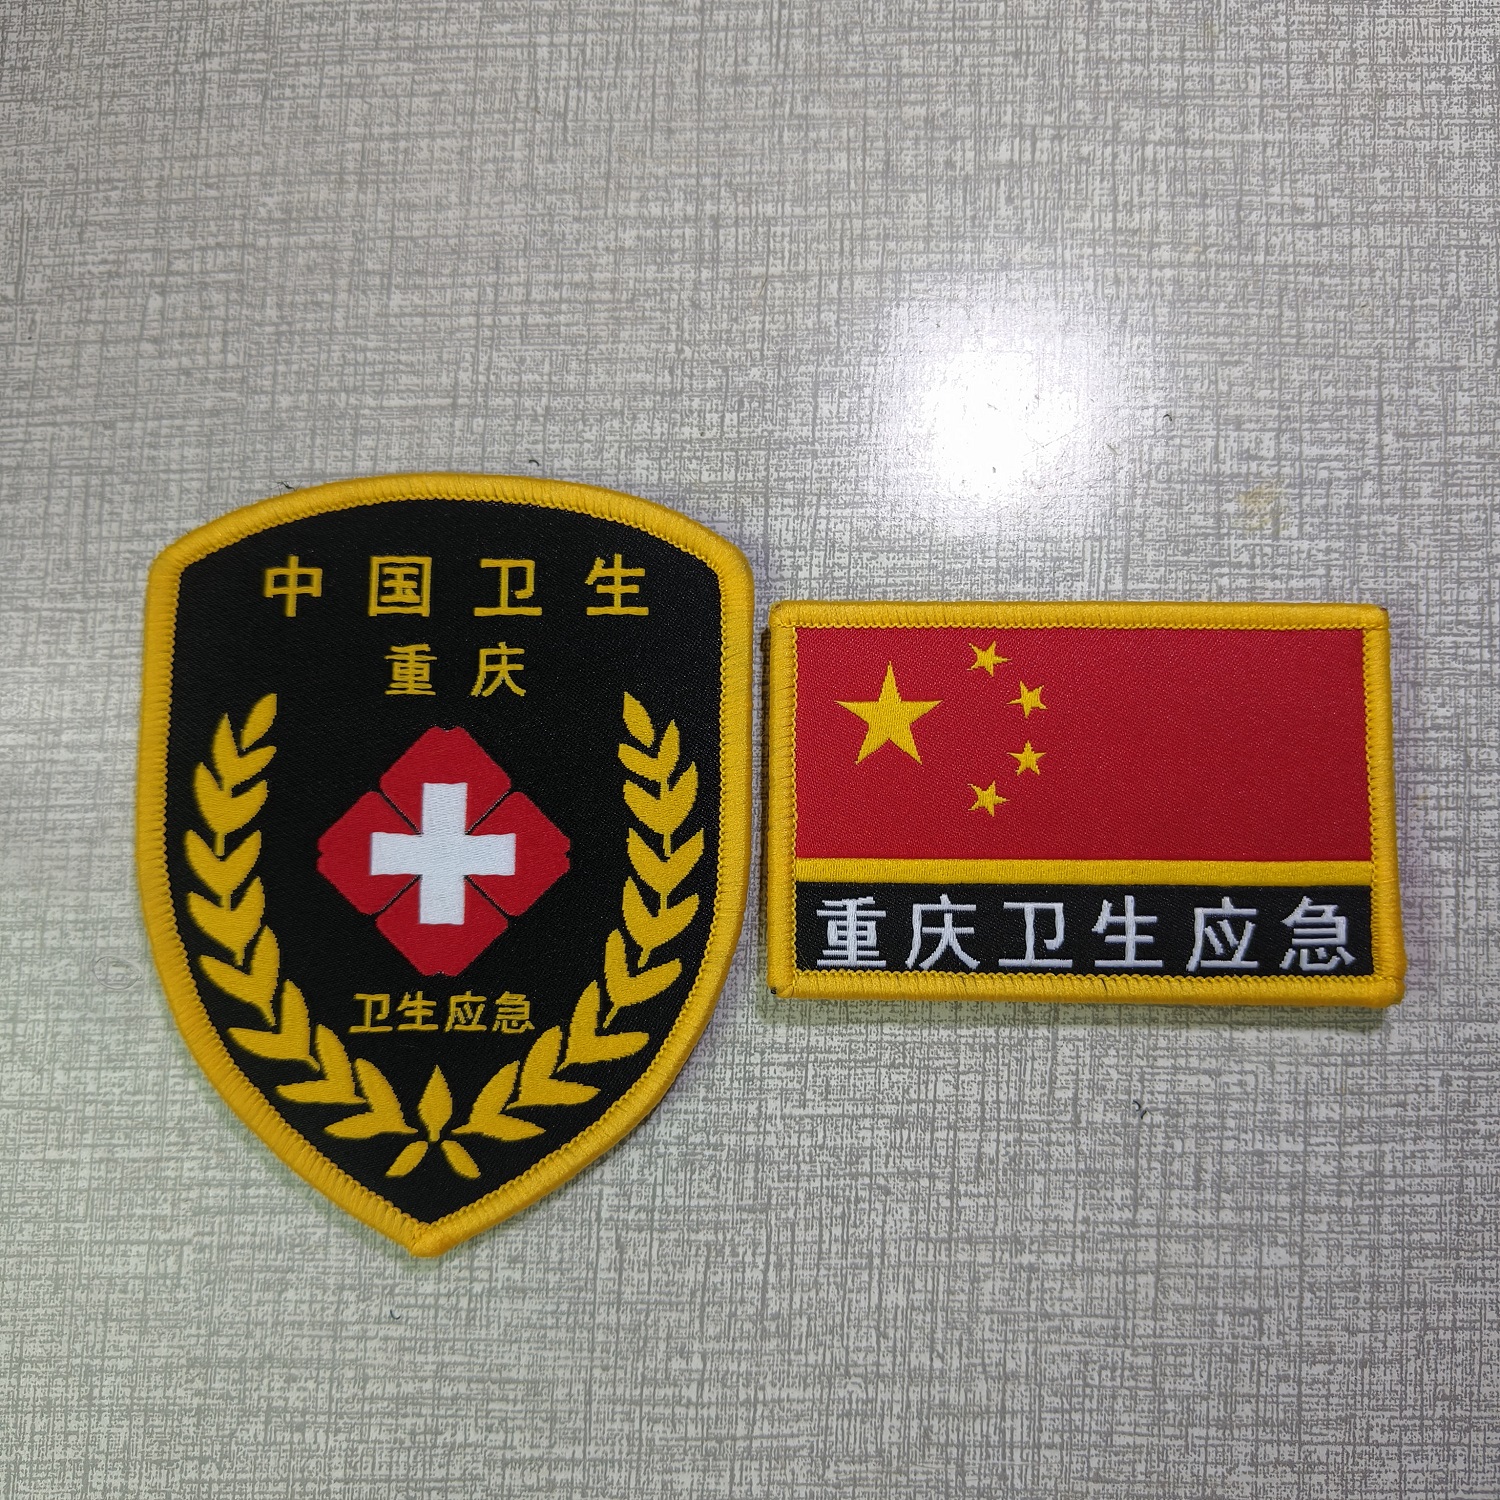 现货 重庆 卫生应急 臂章 国旗胸章 医学救援 中国卫生袖章 胸标